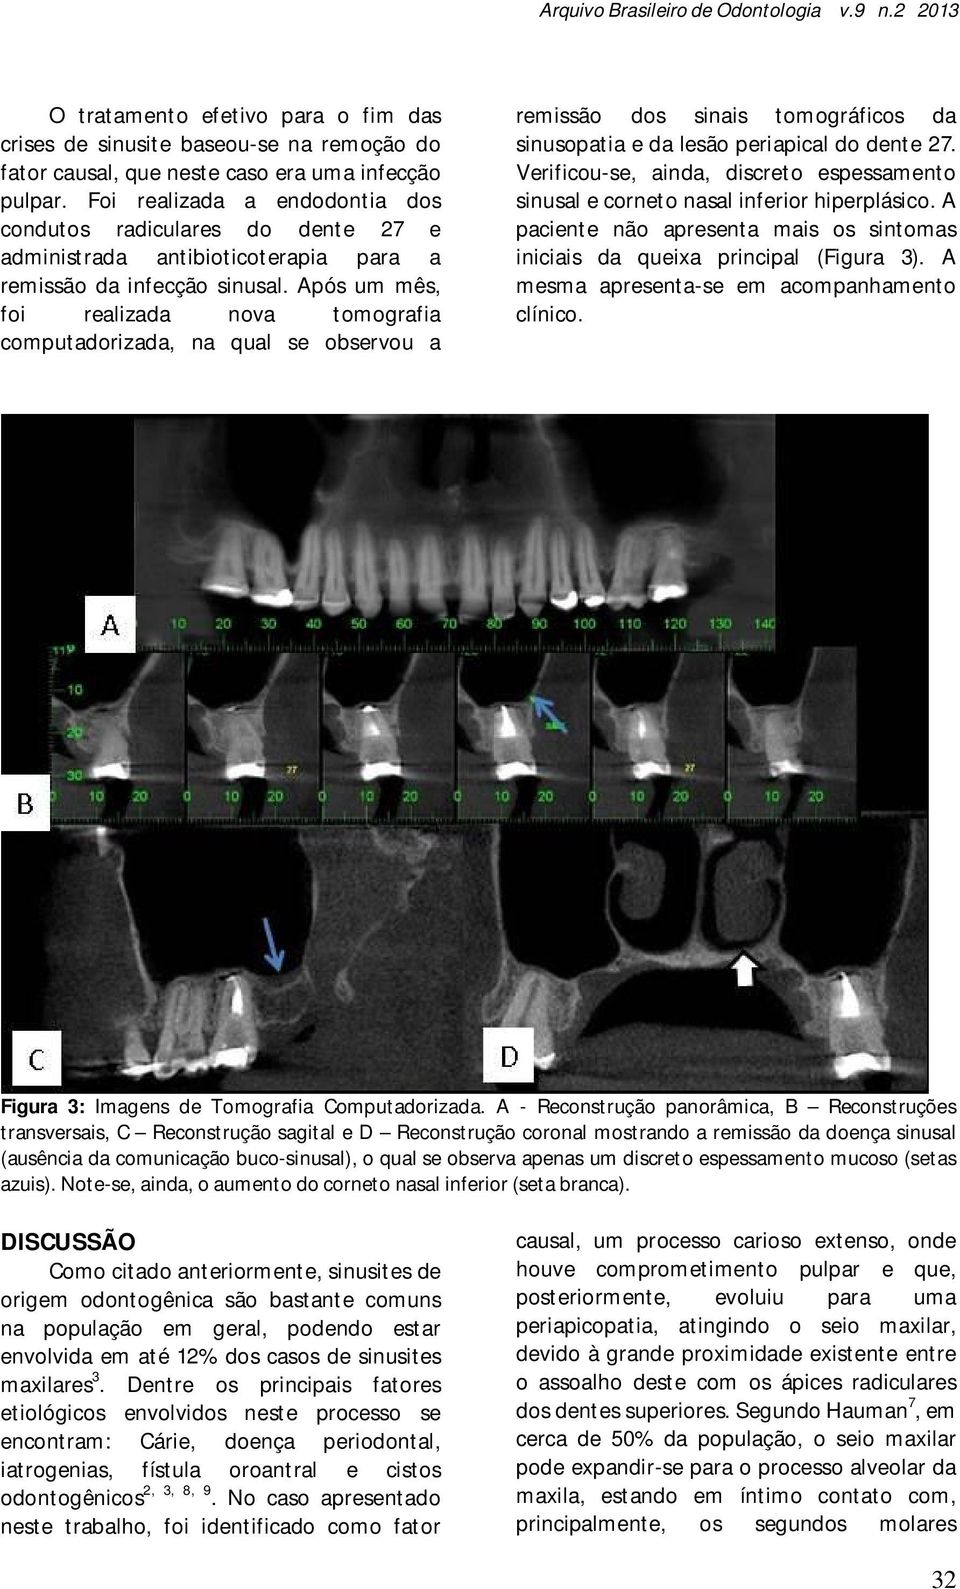 Após um mês, foi realizada nova tomografia computadorizada, na qual se observou a remissão dos sinais tomográficos da sinusopatia e da lesão periapical do dente 27.